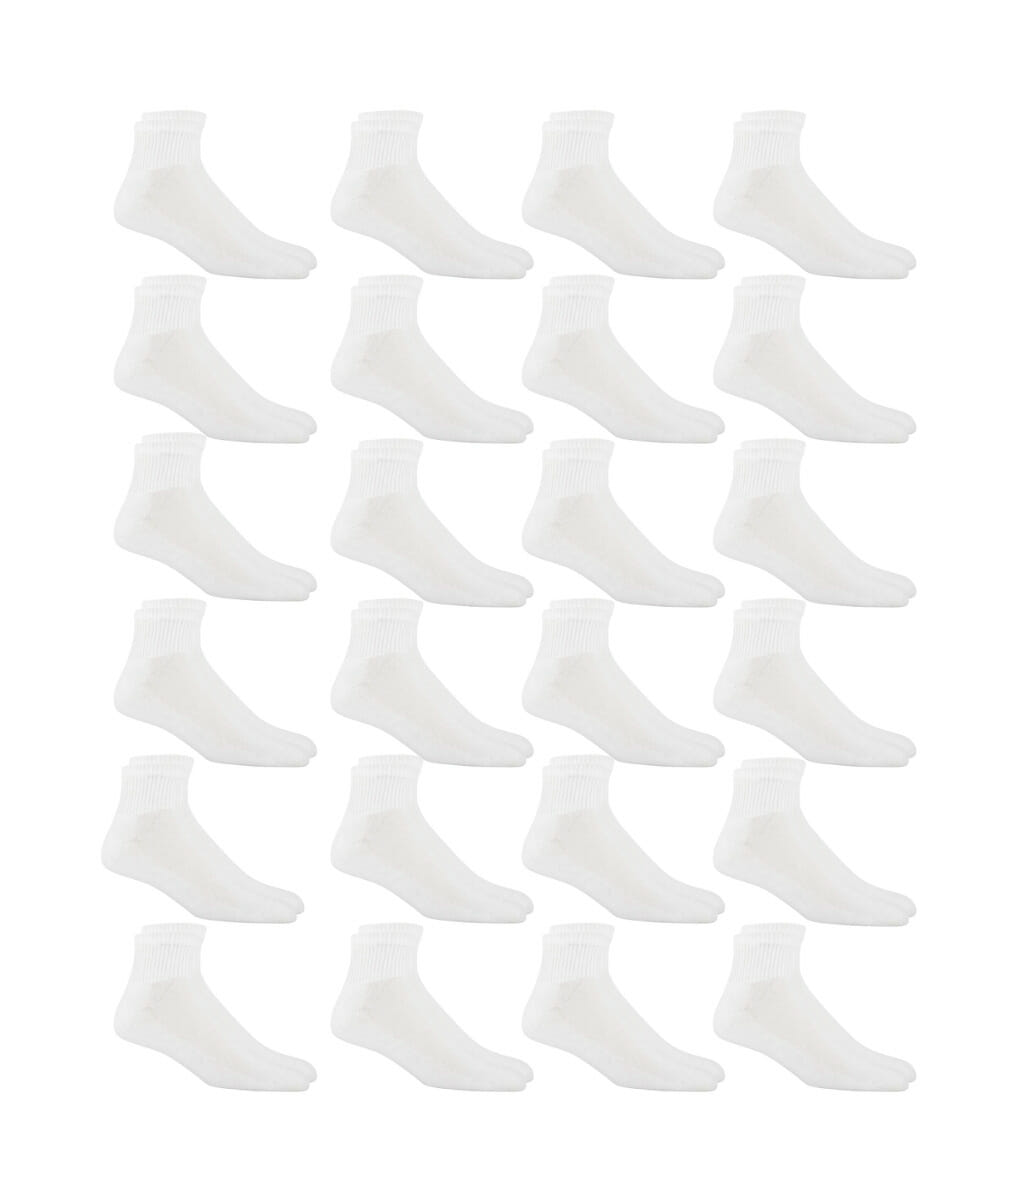 Πακέτο ανδρικές ημίκοντες κάλτσες σε λευκό χρώμα 24 ζεύγη 211539 24pack White